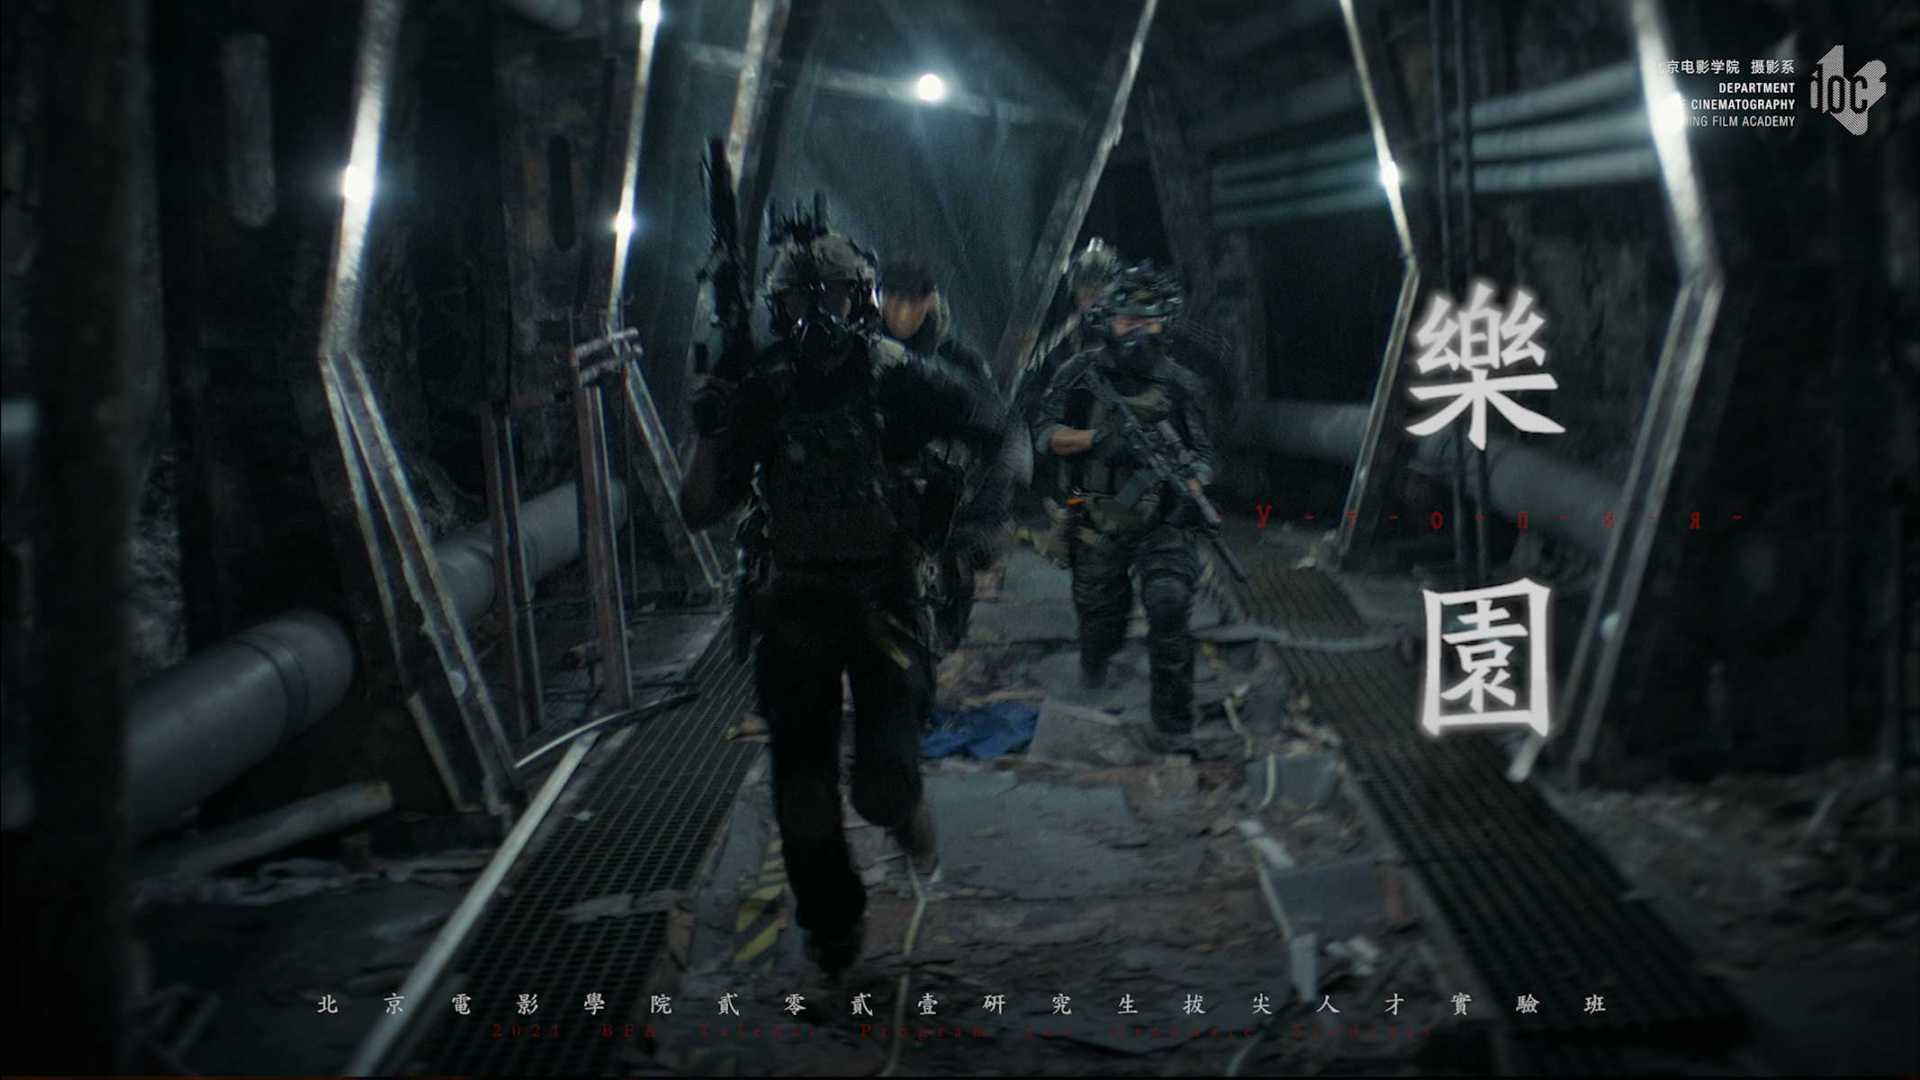 《乐园》Trailer 01丨北京电影学院摄影系丨战争 x 惊悚丨 类型短片作业